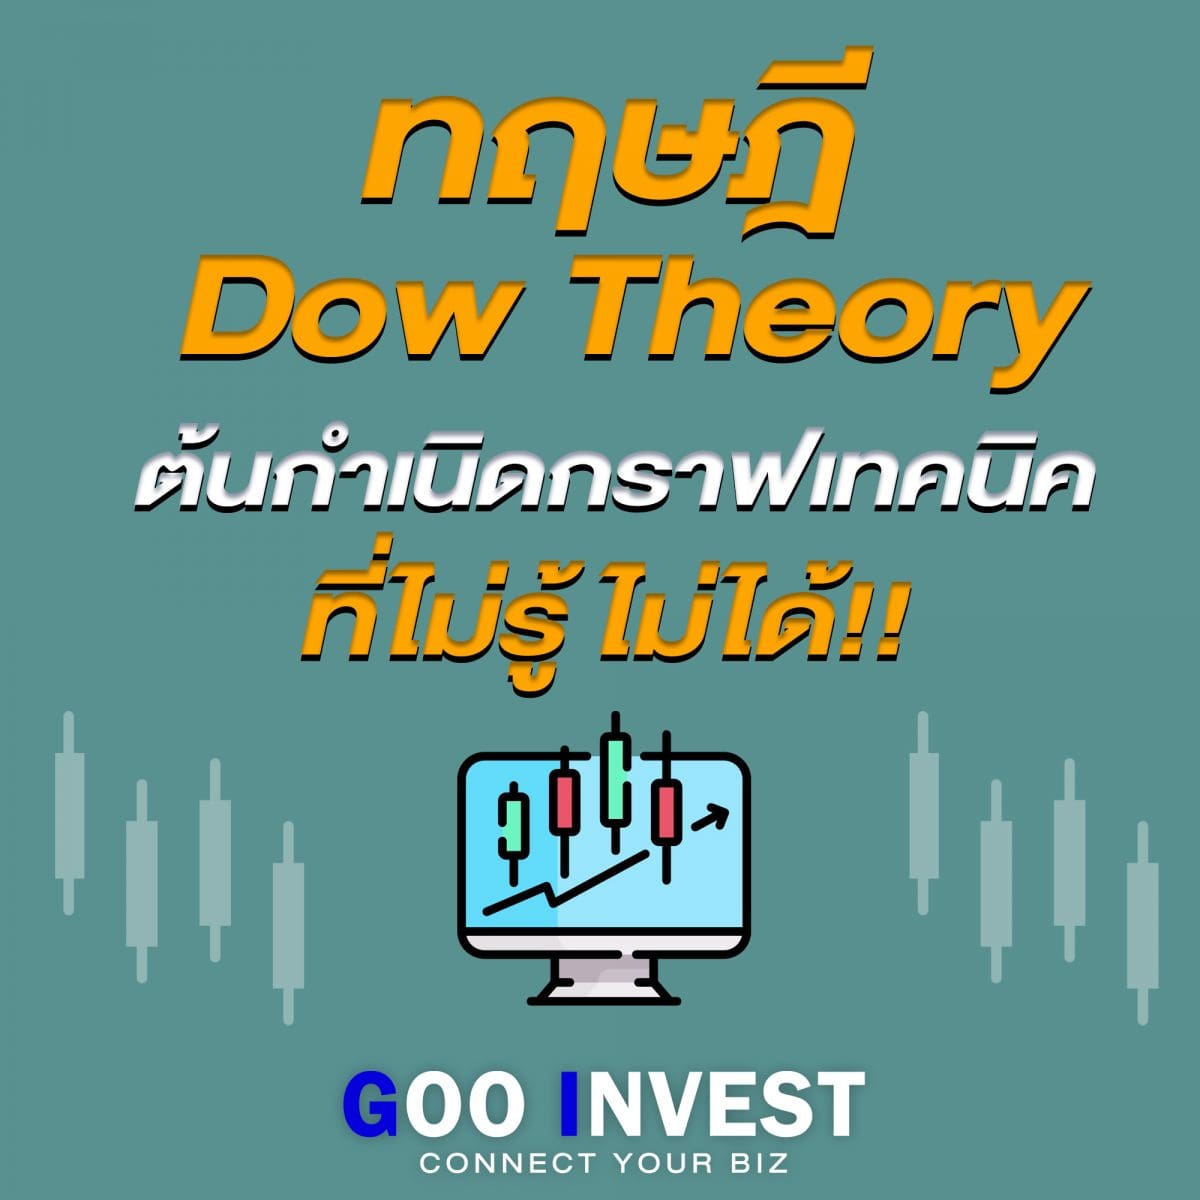 ทฤษฎี Dow Theory ต้นกำเนิด กราฟเทคนิค ที่มือใหม่ ต้องรู้ Goo Invest Trade